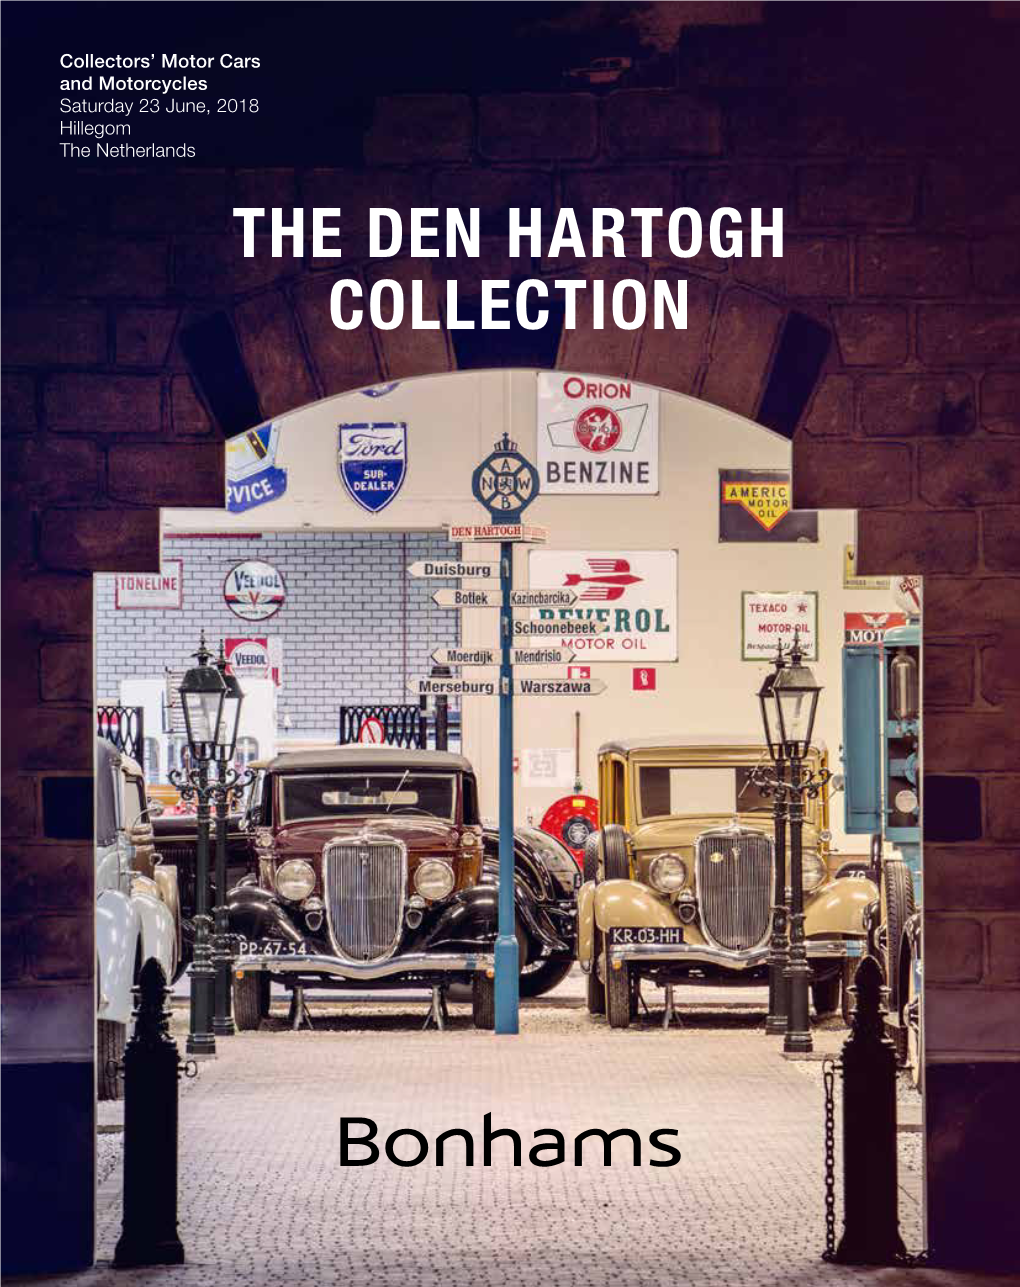 The Den Hartogh Collection